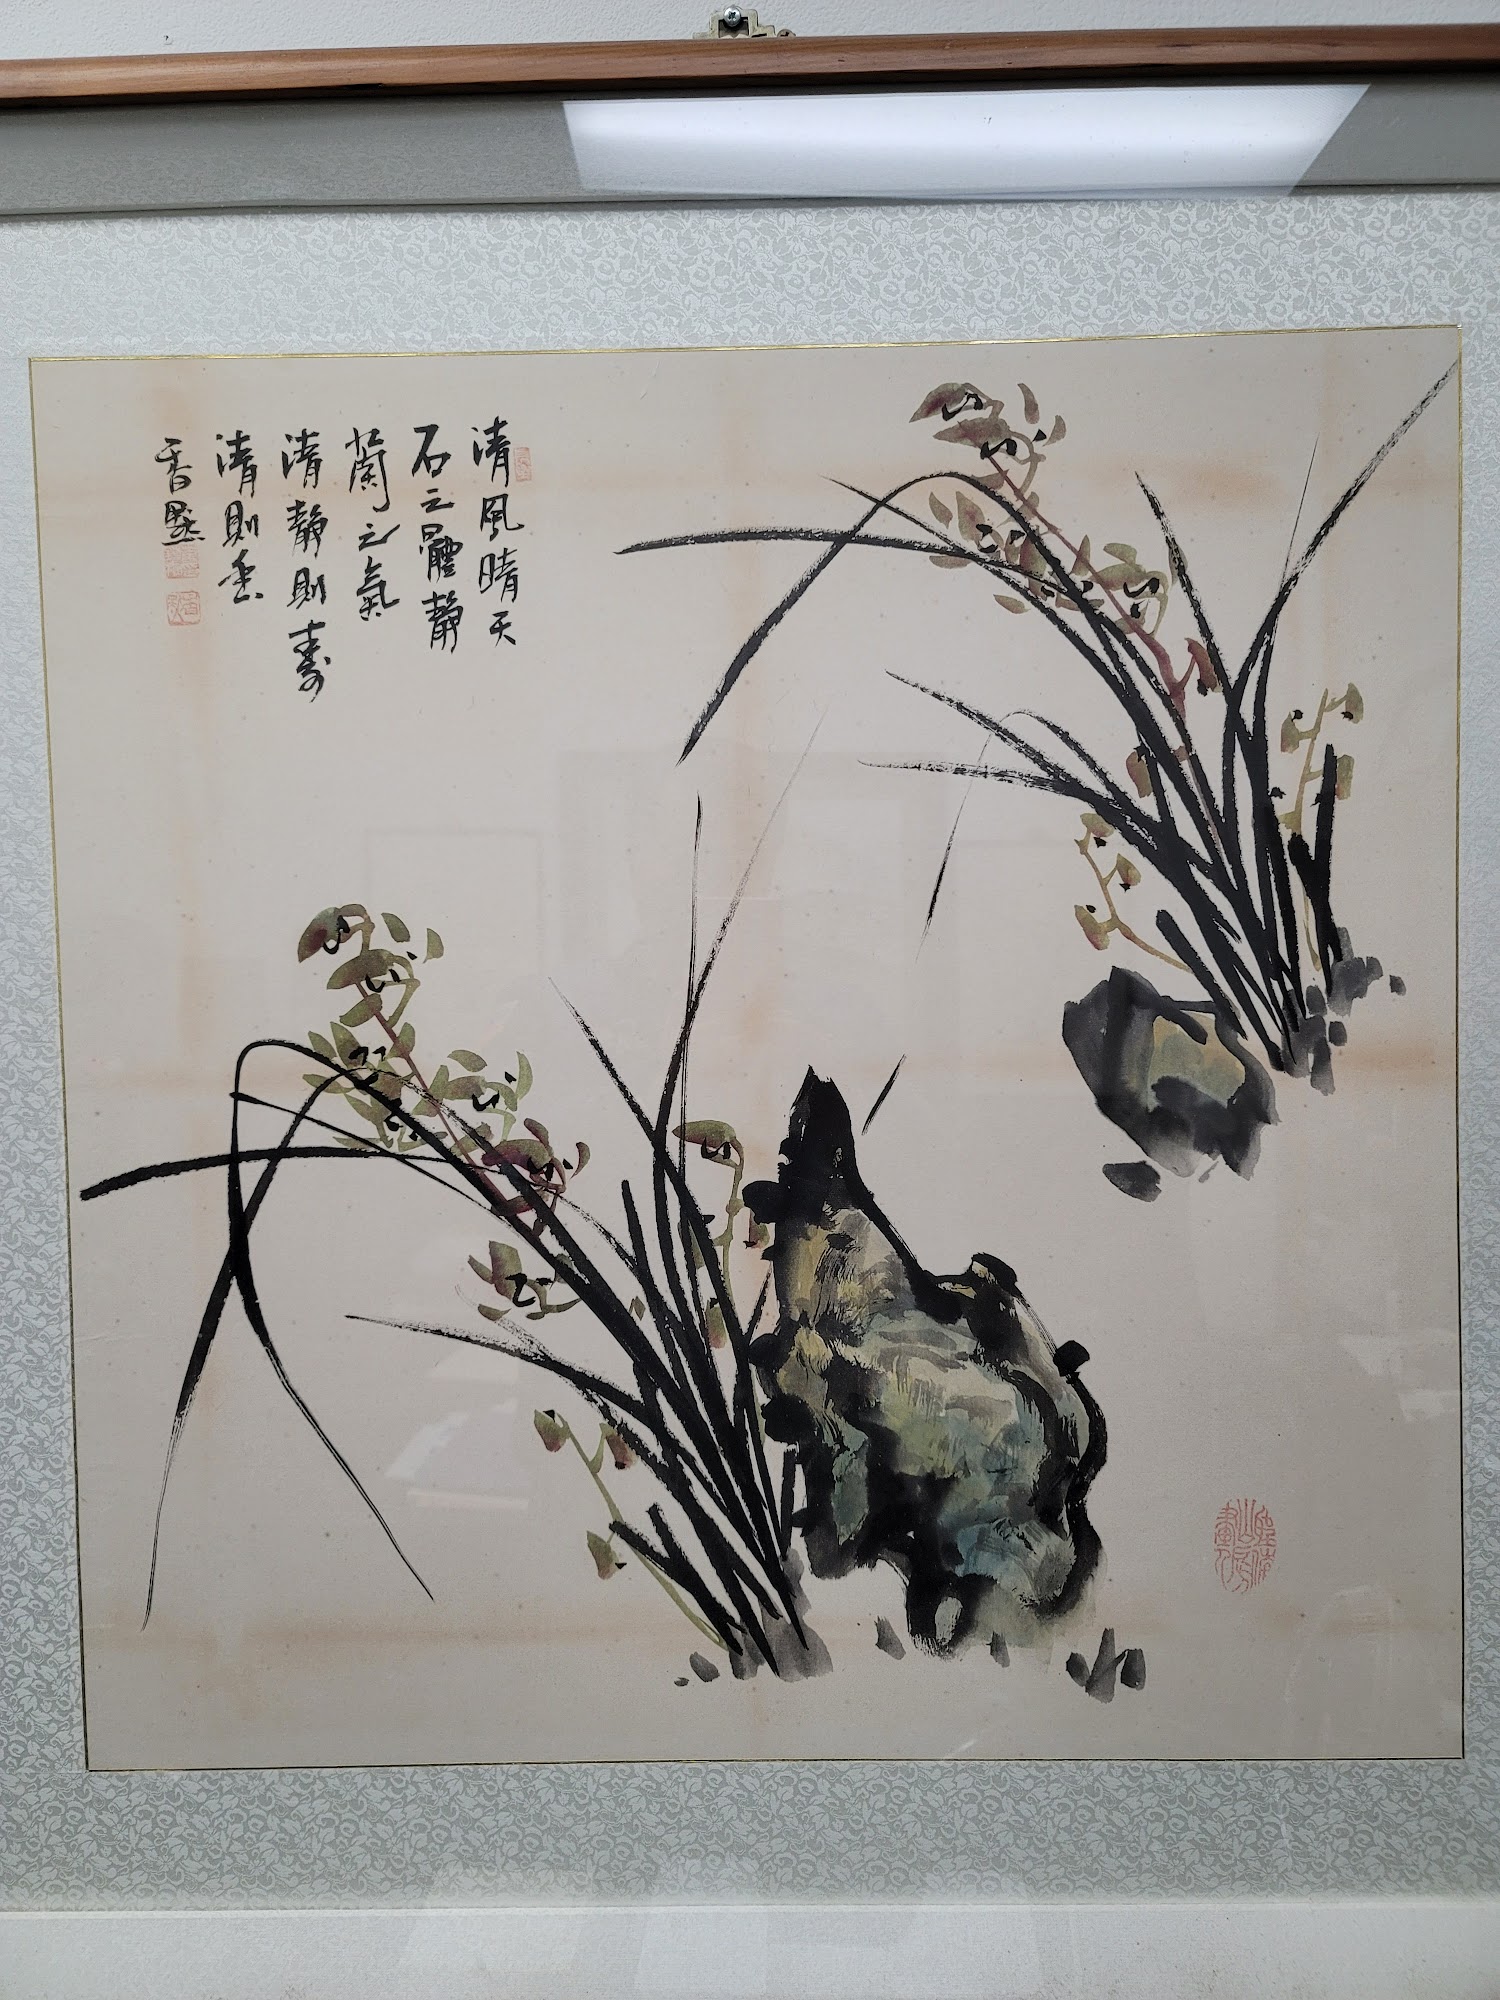 Yang's Oriental Medicine